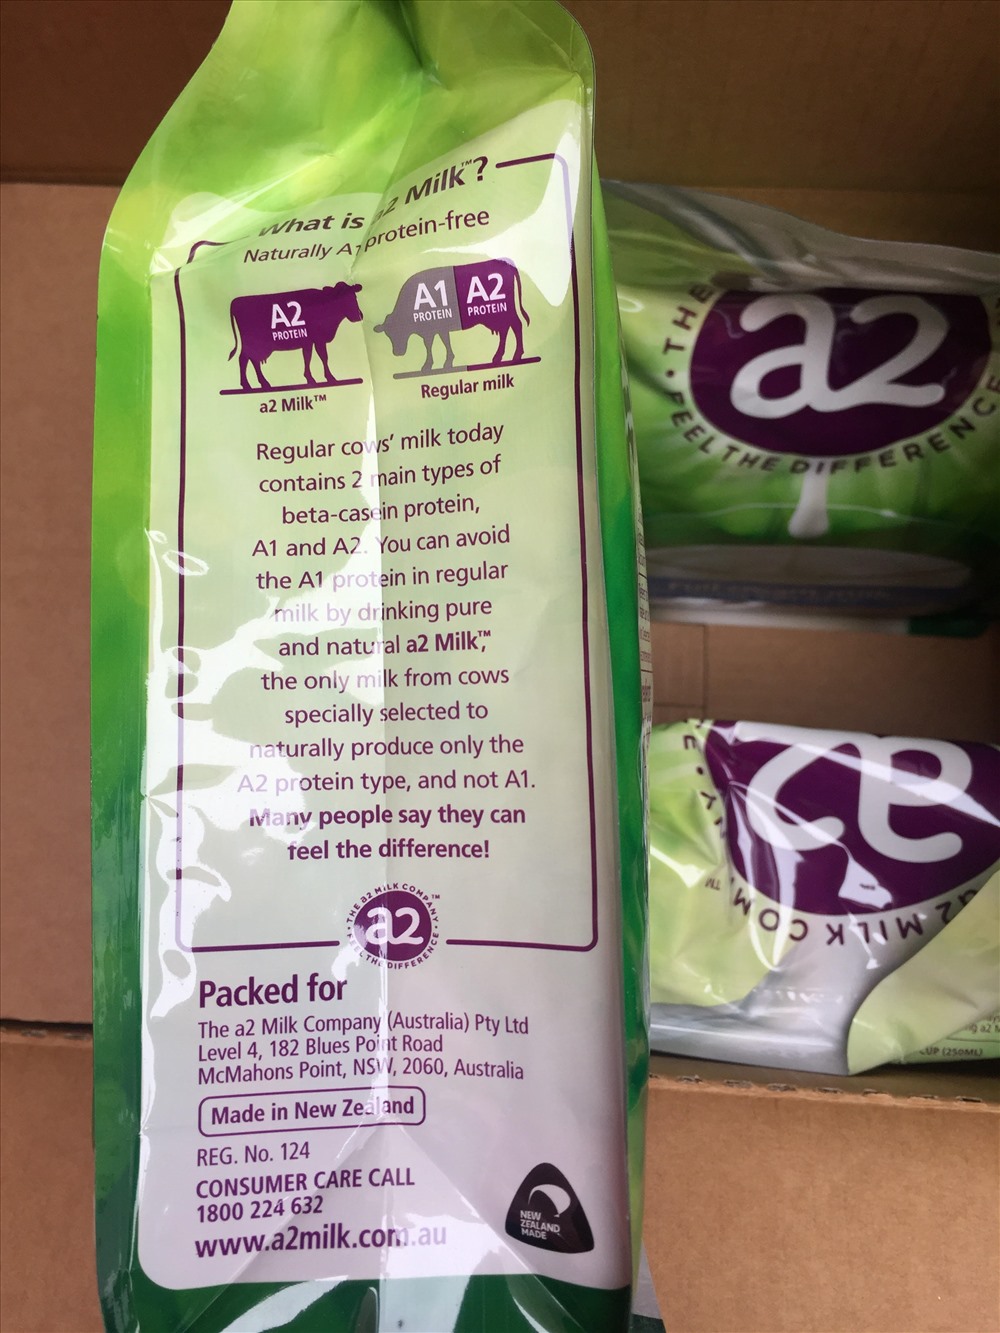 Sữa được ghi chú trên nhãn mác là “Made in New Zealand”